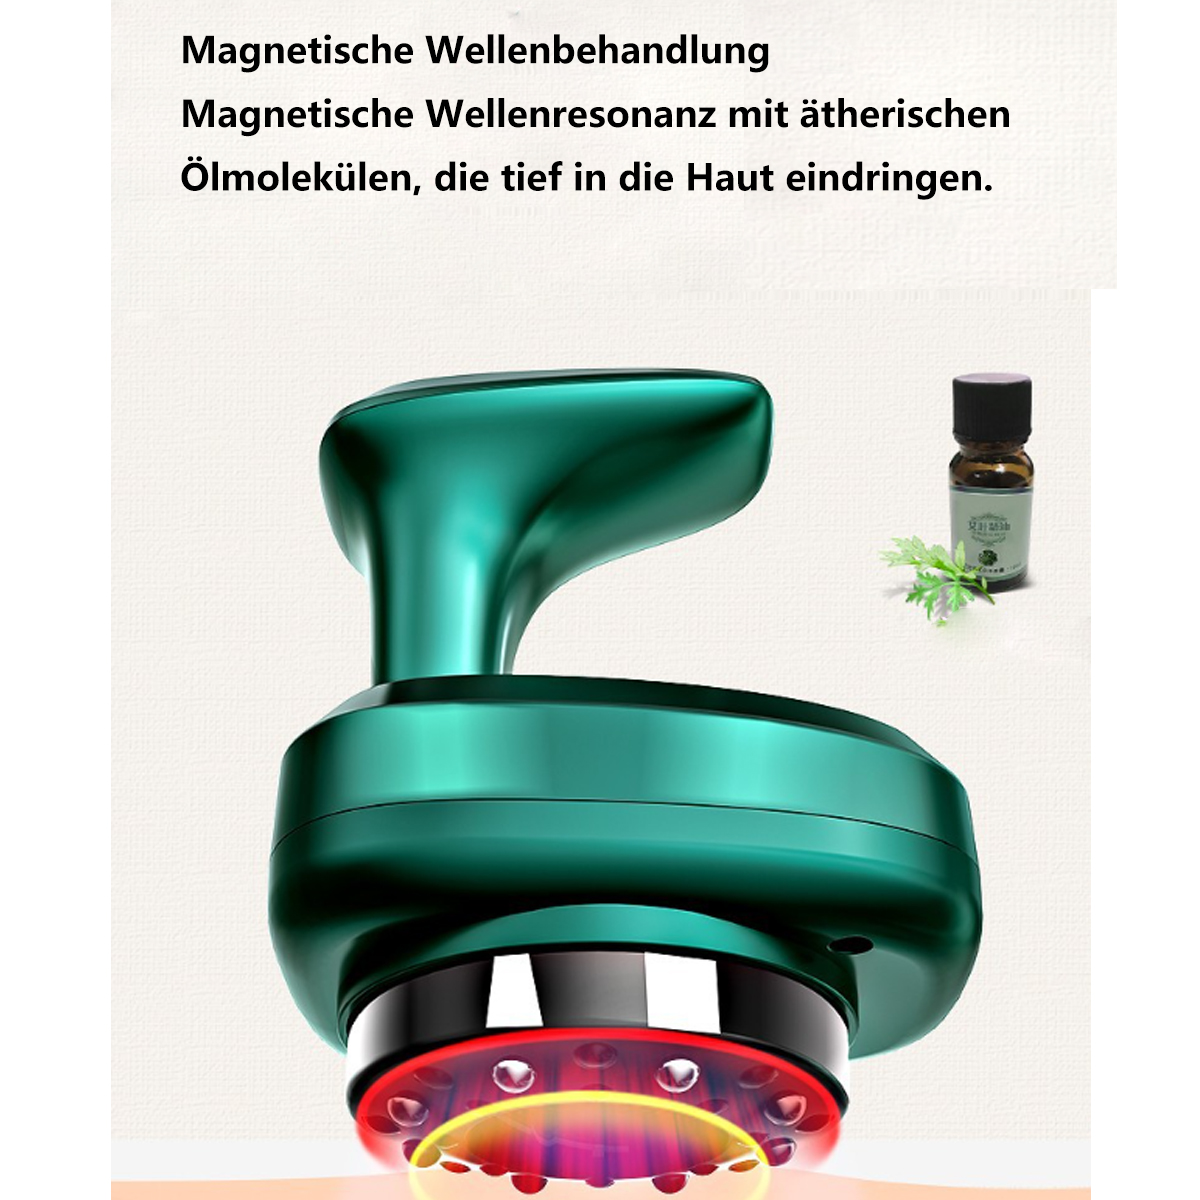 Schabeinstrument Massagegerät Schröpfinstrument grün Unterdruckmassage-Vakuum-Schabbrett Intelligentes BYTELIKE